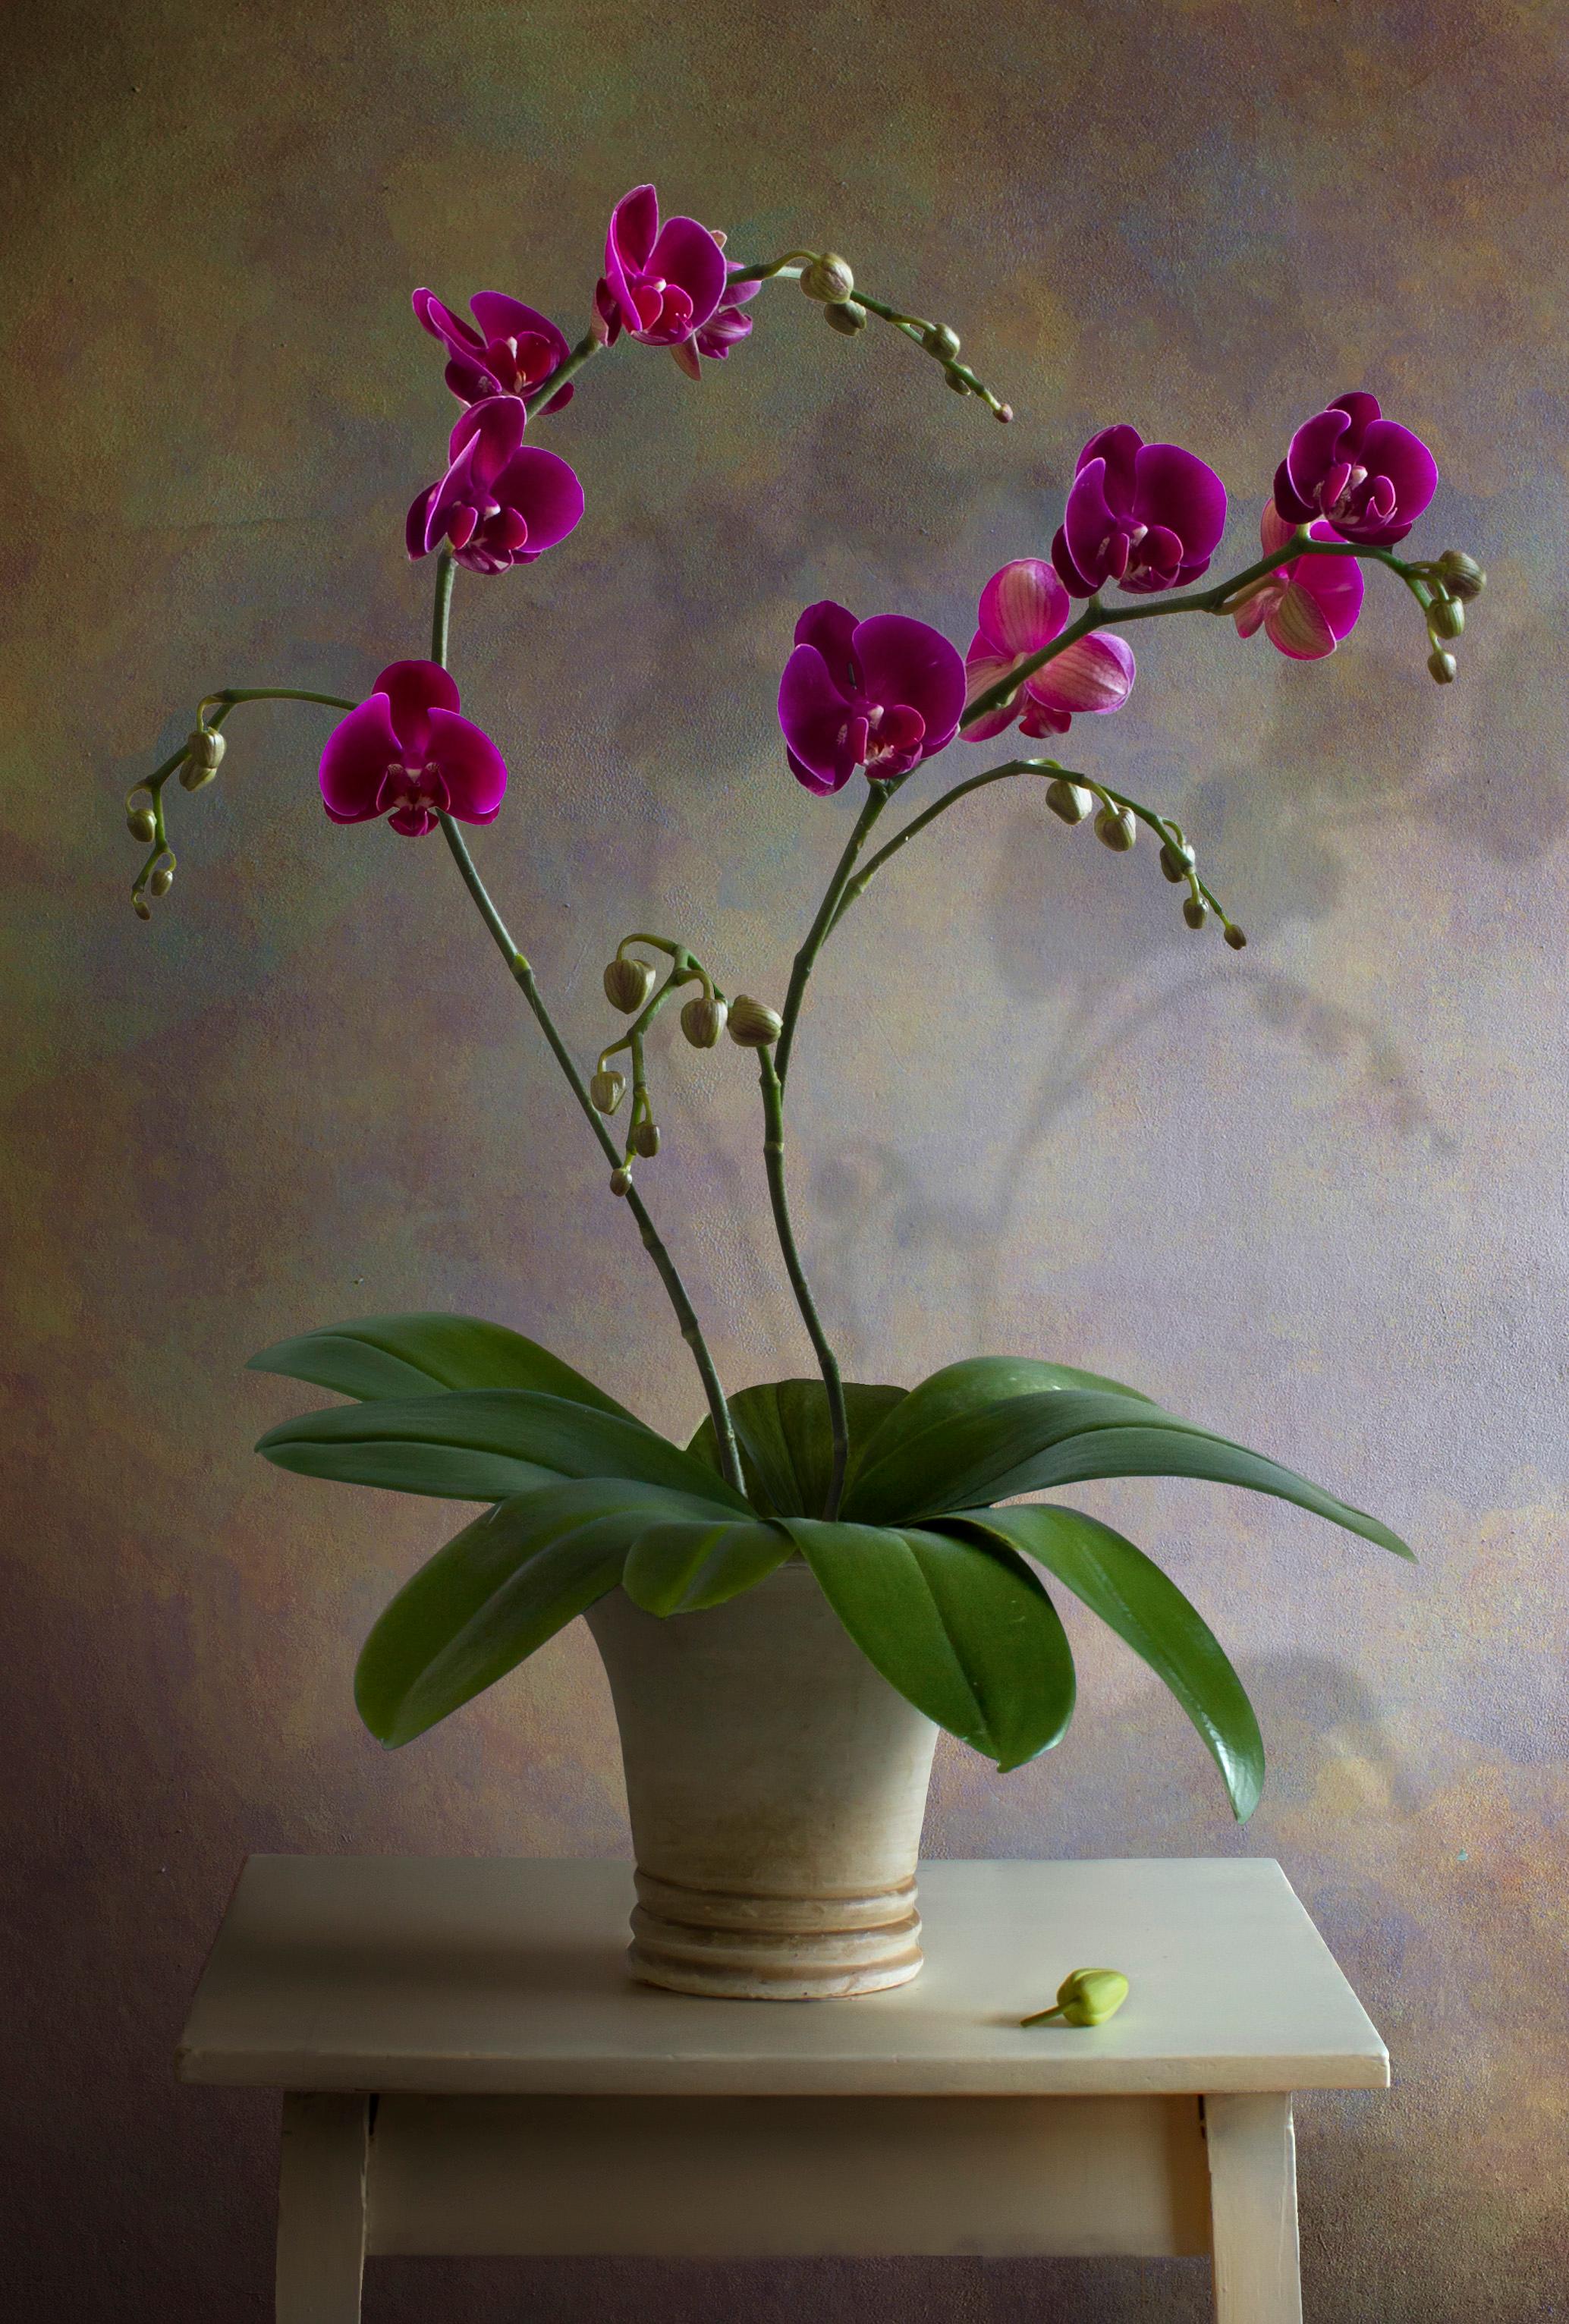 Albert Benaroya (Israélien), Orchidées rouges et violettes, huile sur toile, 81x56 cm 